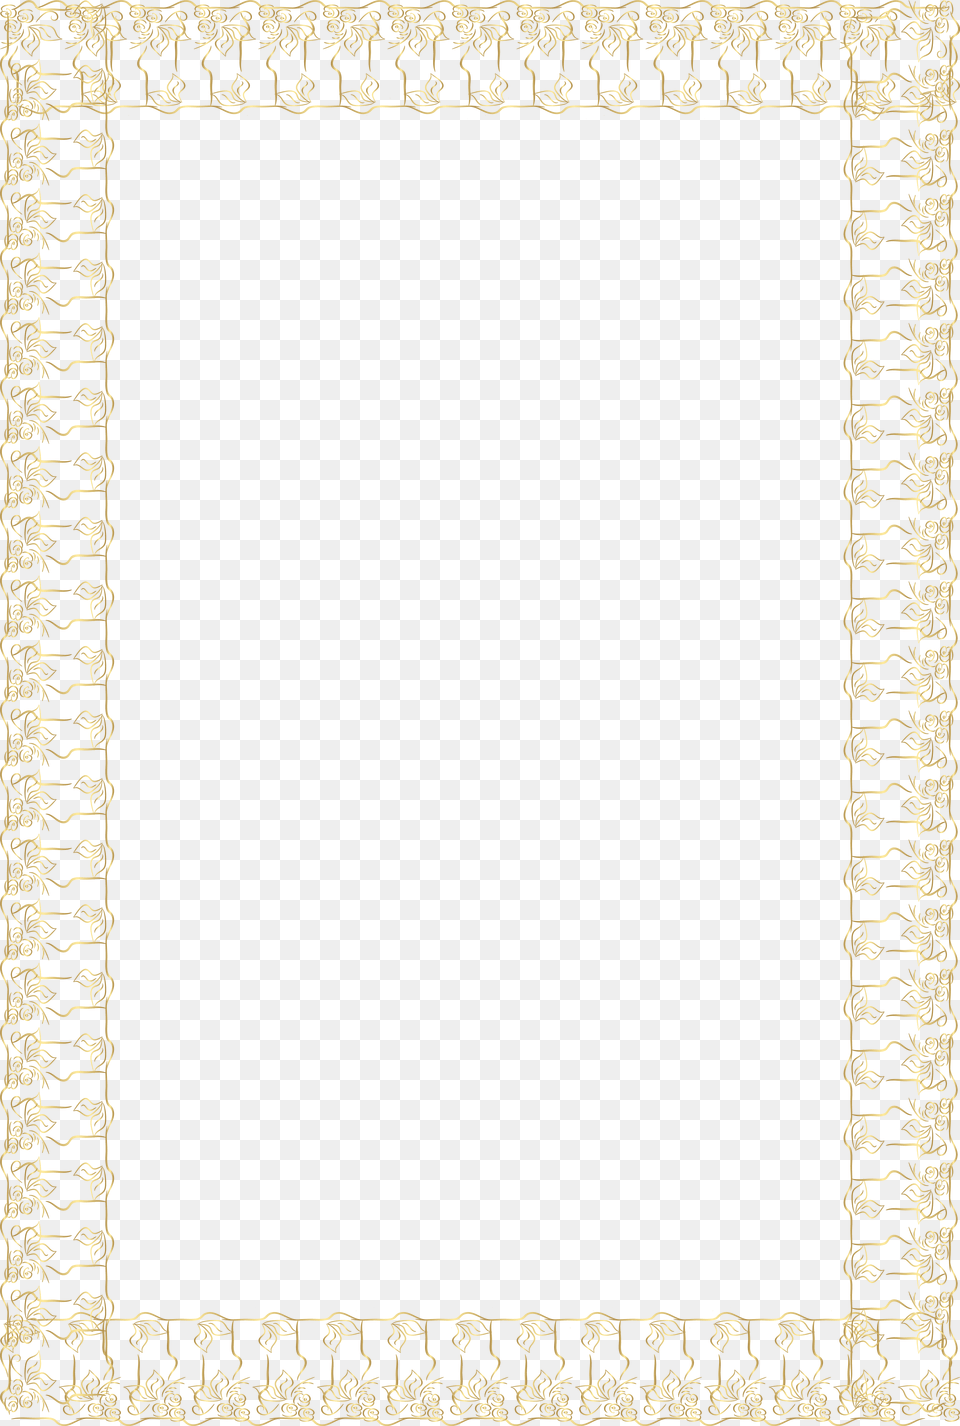 Decorative Gold Frame Border Image Paper, Home Decor, Rug, Blackboard Png